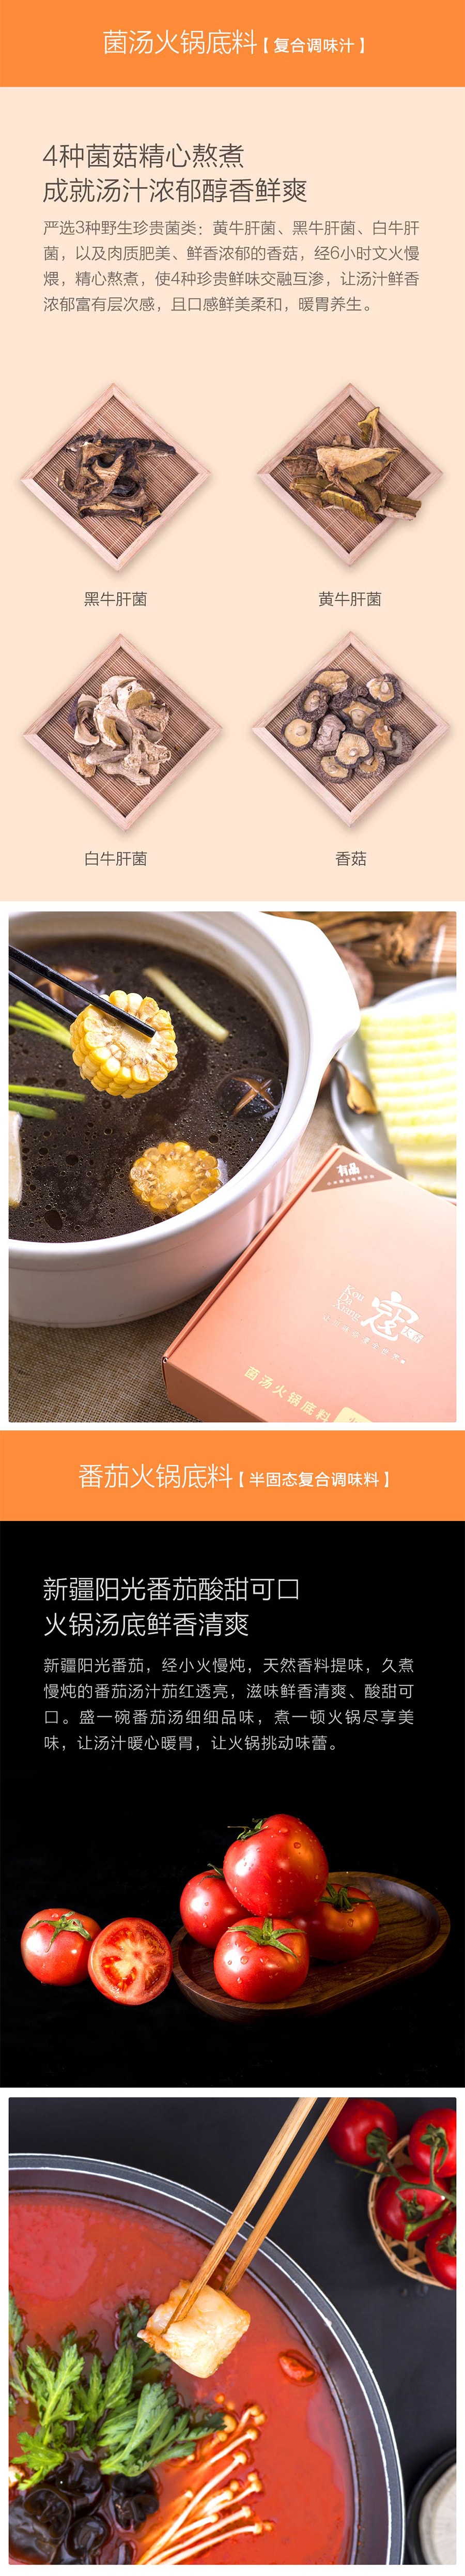 XIAOMI YOUPIN KOUDAXIANG  Hot Pot Bottom Material (Mushroom)(150g*2 bags) / box